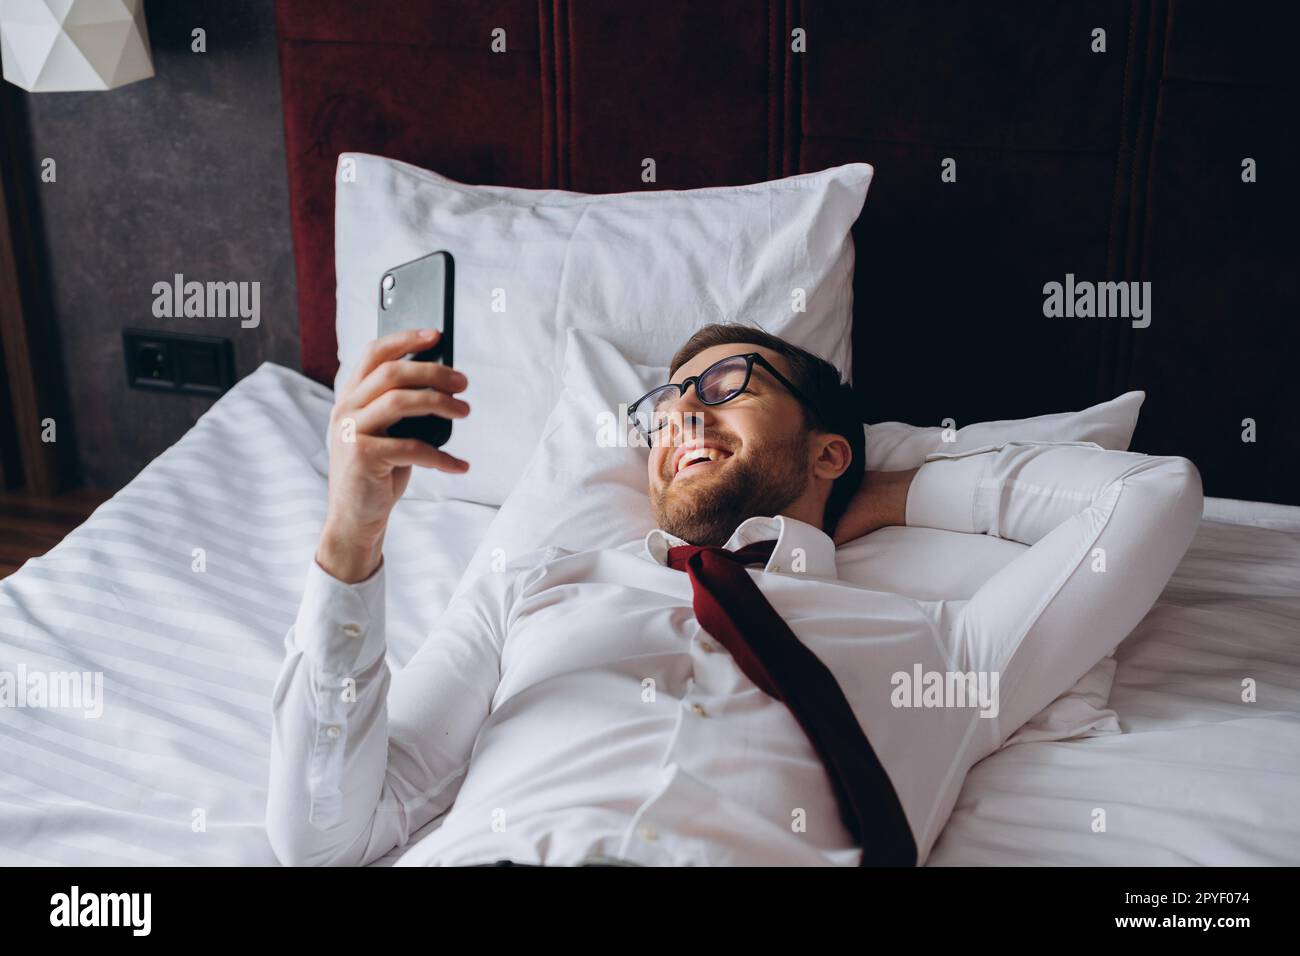 Un homme d'affaires se repose sur un lit dans une chambre d'hôtel. Un jeune homme utilise son smartphone pendant qu'il se repose. Banque D'Images